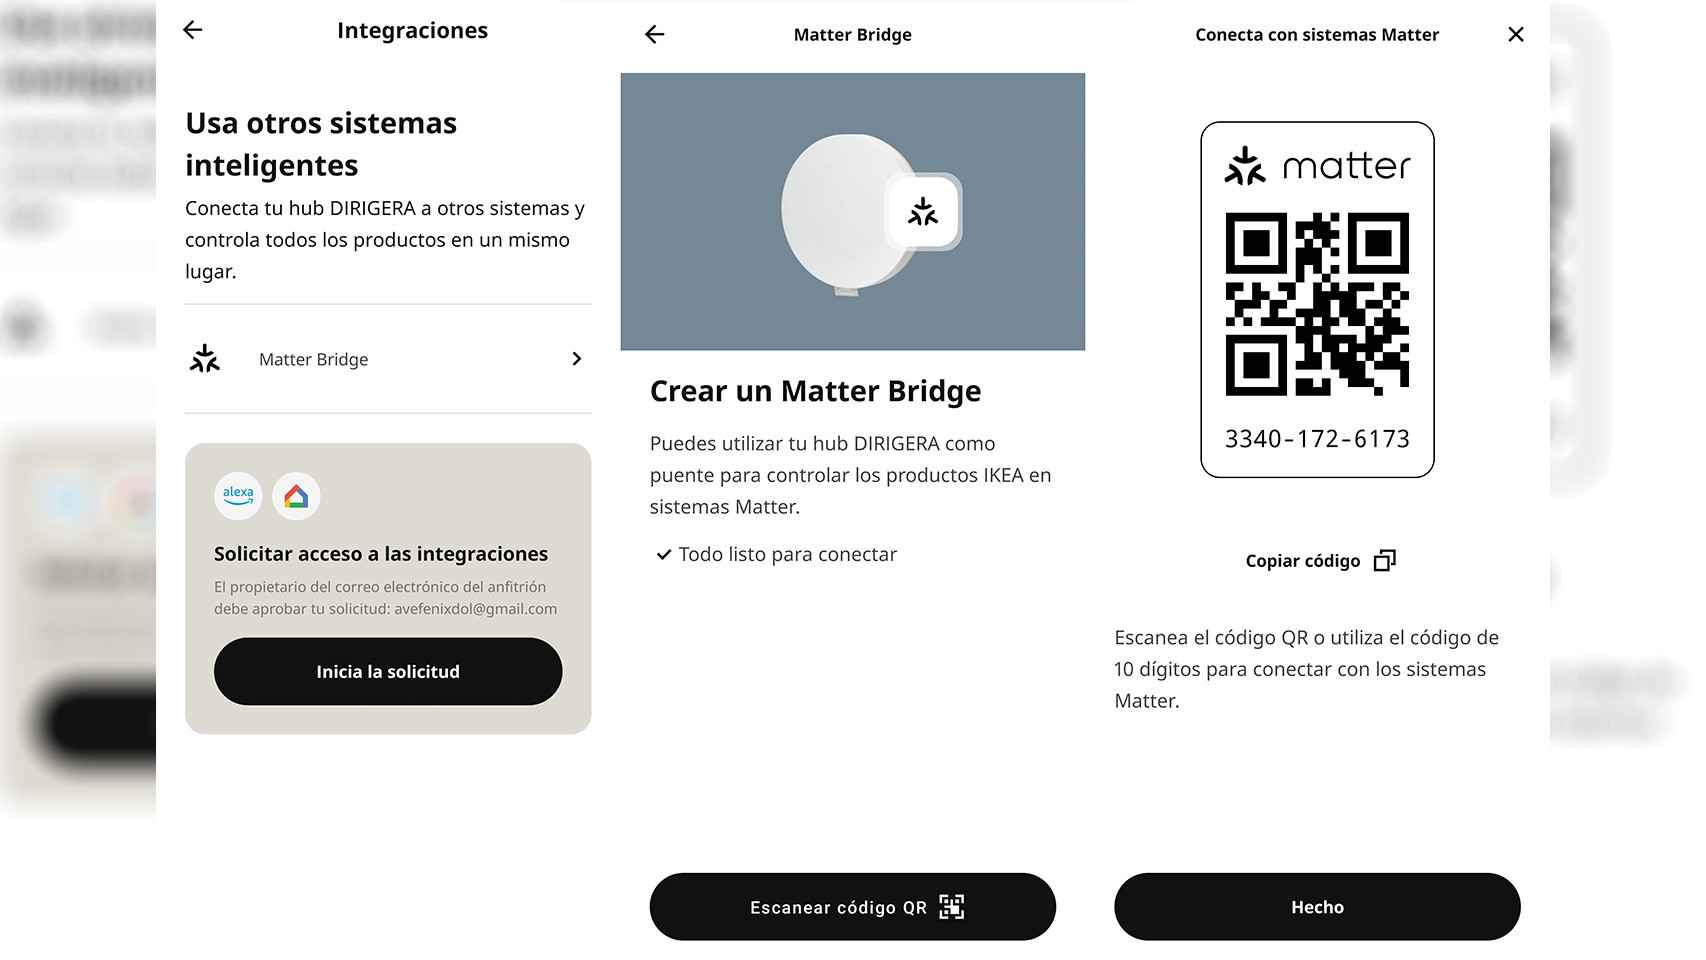 Imagen de los pasos a seguir para activar Matter Bridge en la app de IKEA